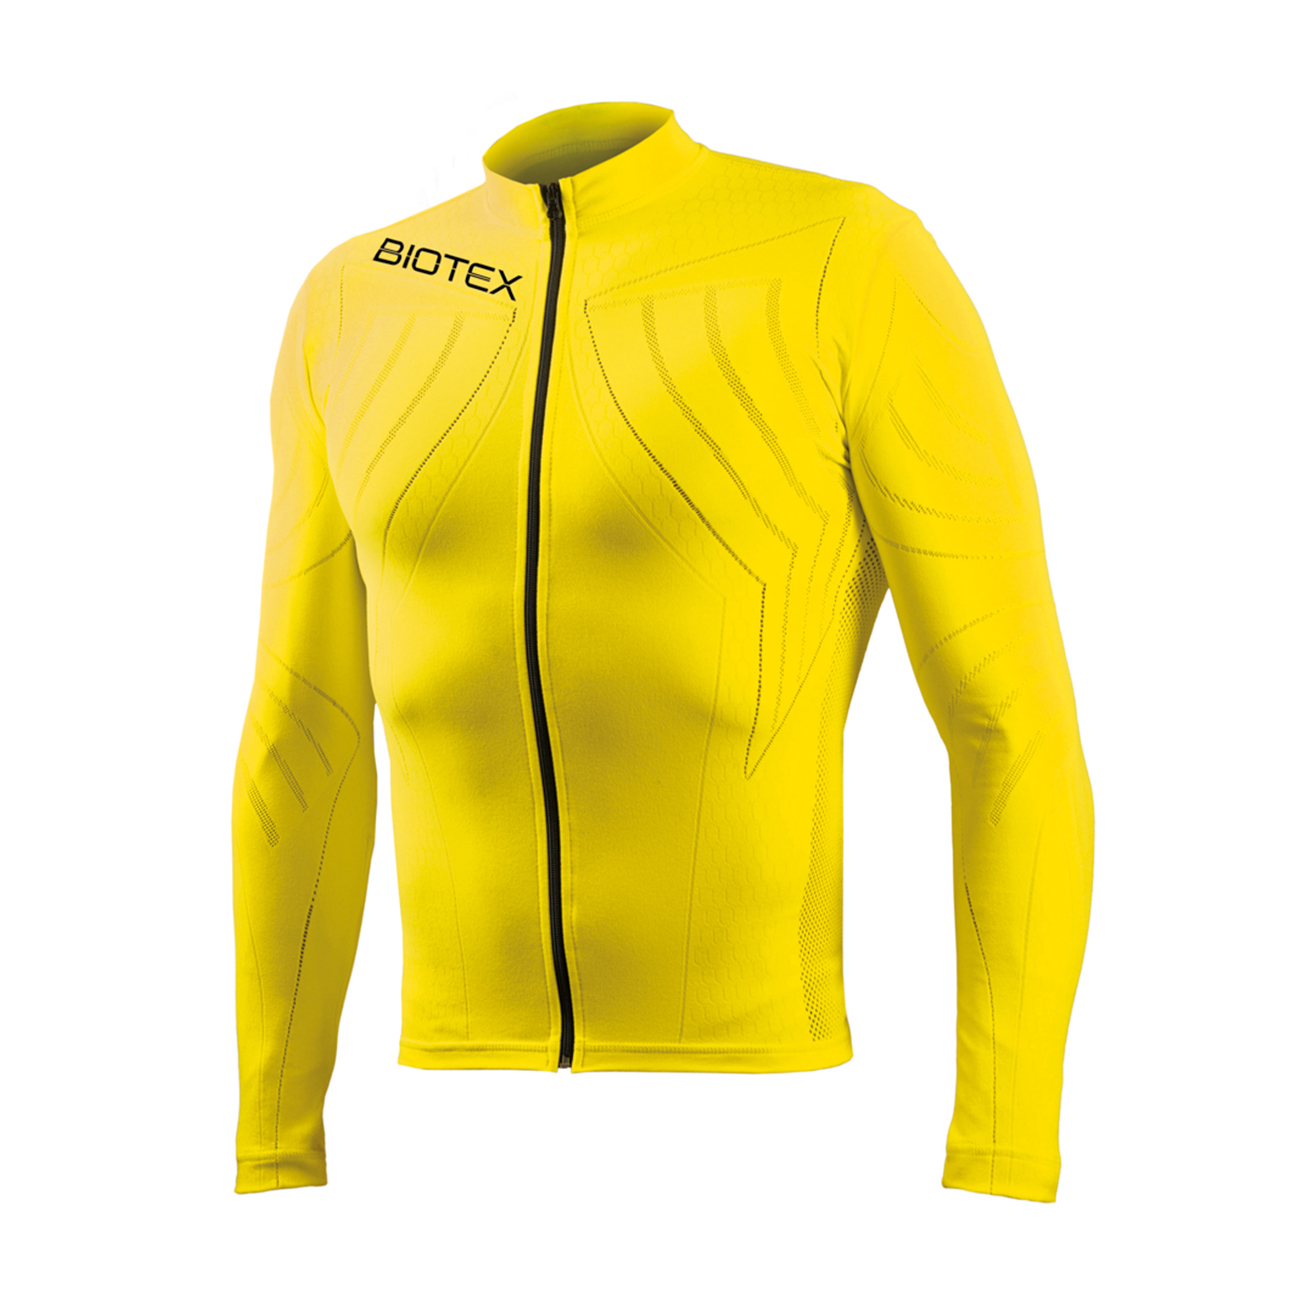 Značka Biotex - BIOTEX Cyklistický dres s dlhým rukávom letný - EMANA SUMMER